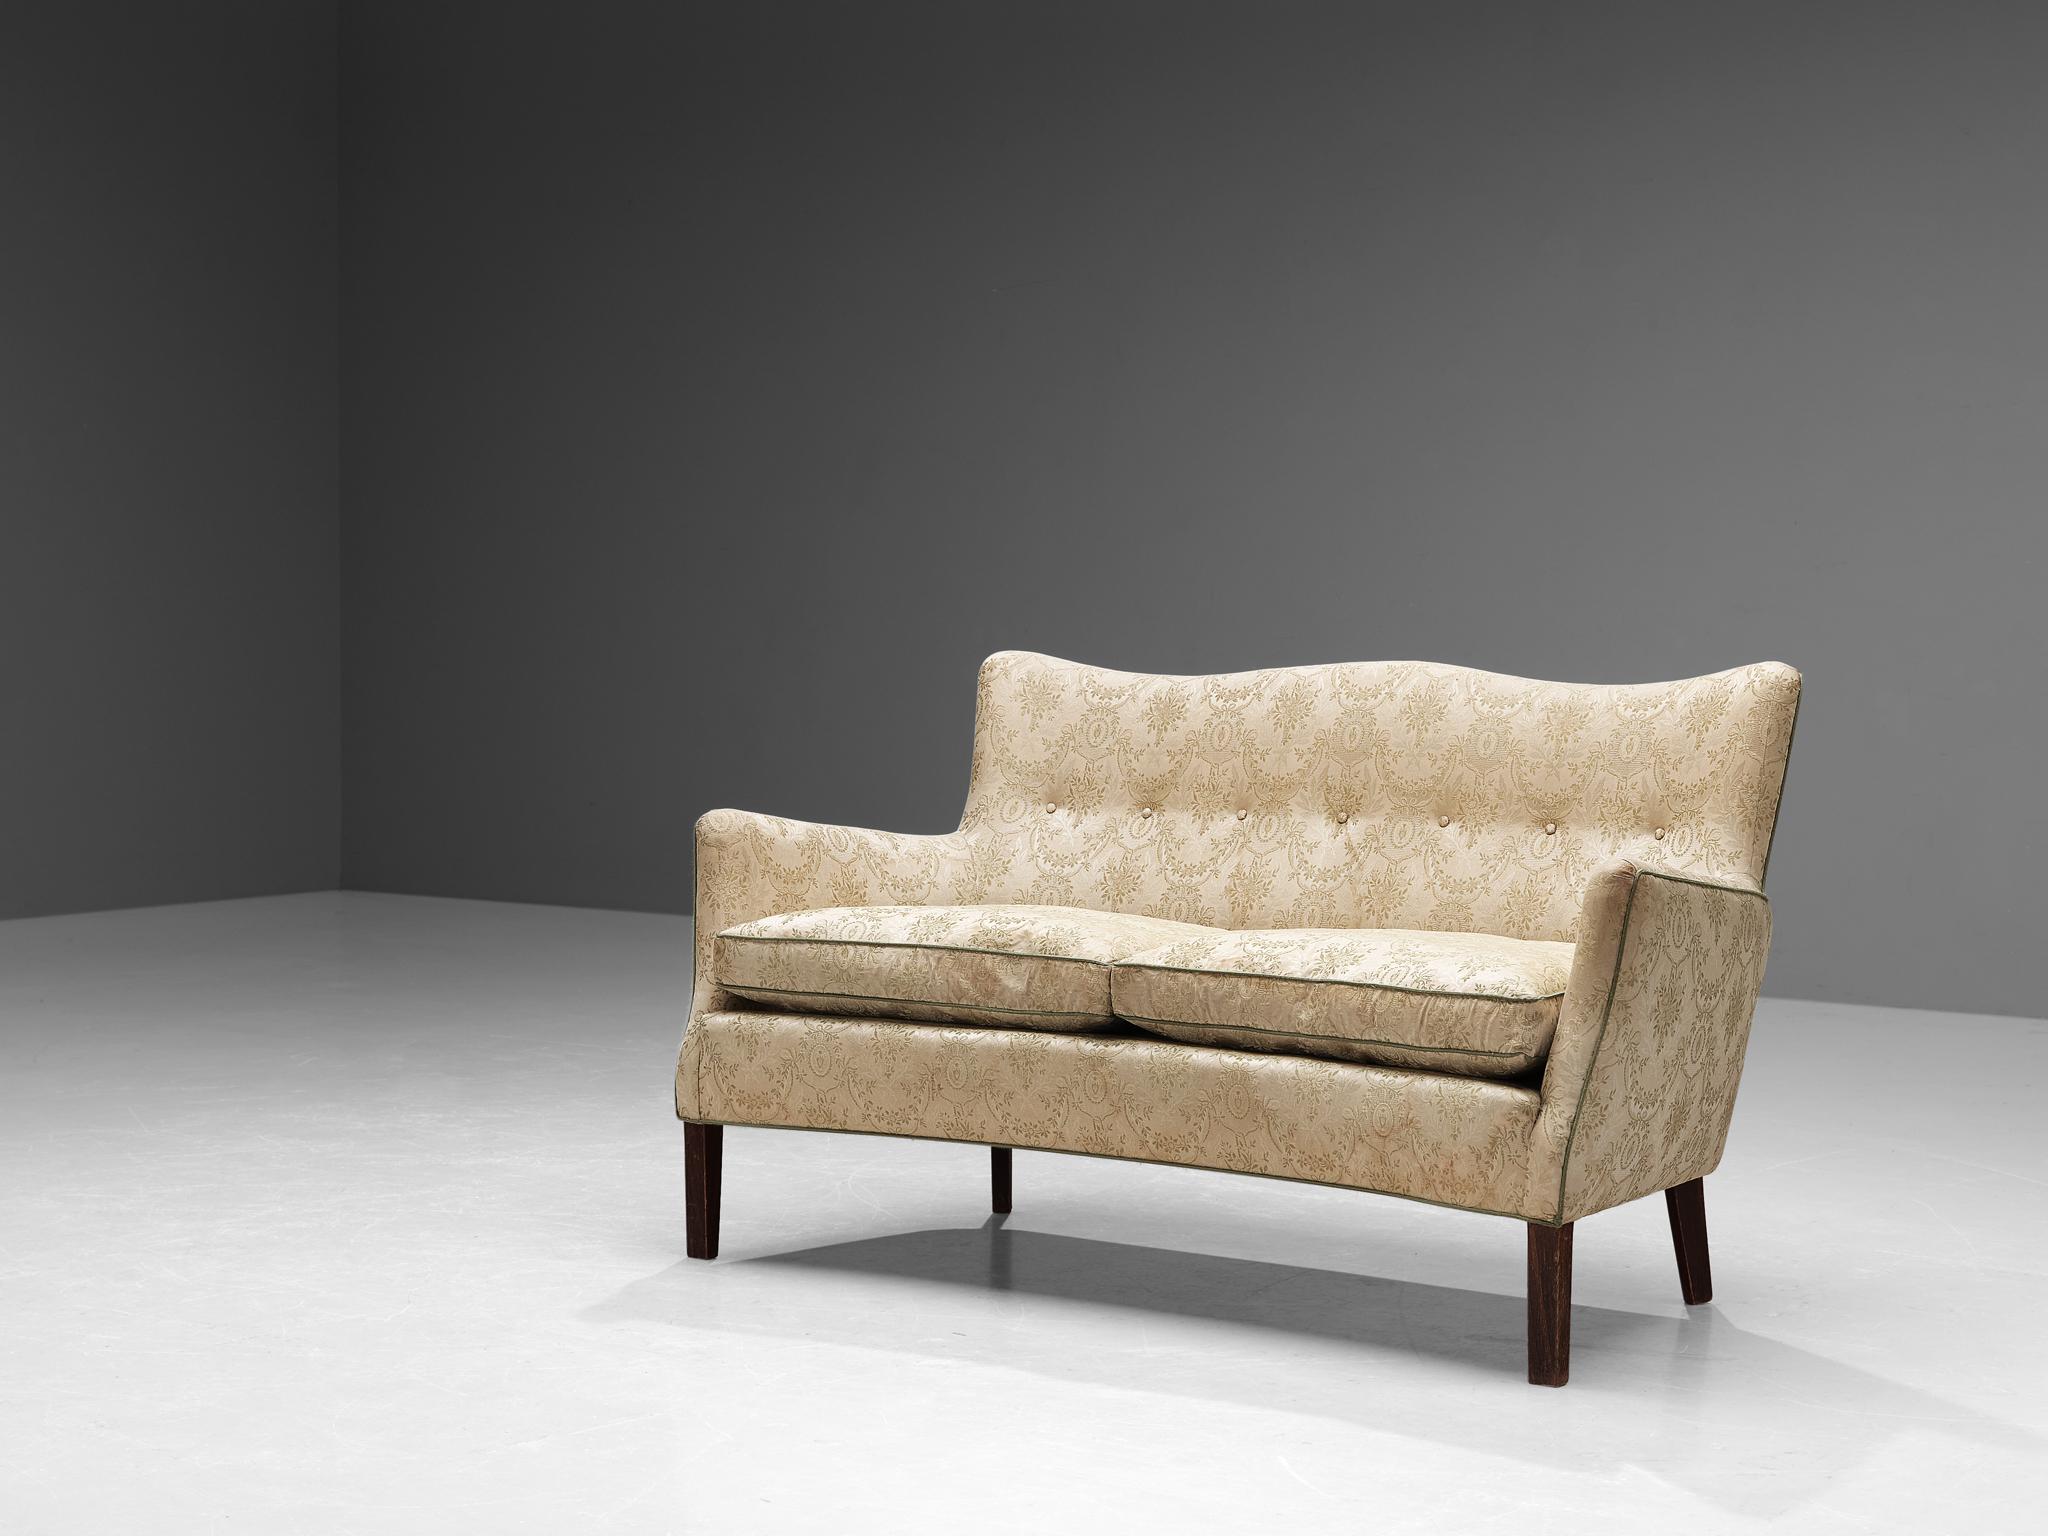 Canapé, tissu, bois, Danemark, années 1950.

Ce canapé a tout le flair et la vitalité d'un meuble danois typique du milieu du siècle. Ce design particulier vous invite à y passer plus de temps grâce à son dossier imposant et haut, légèrement